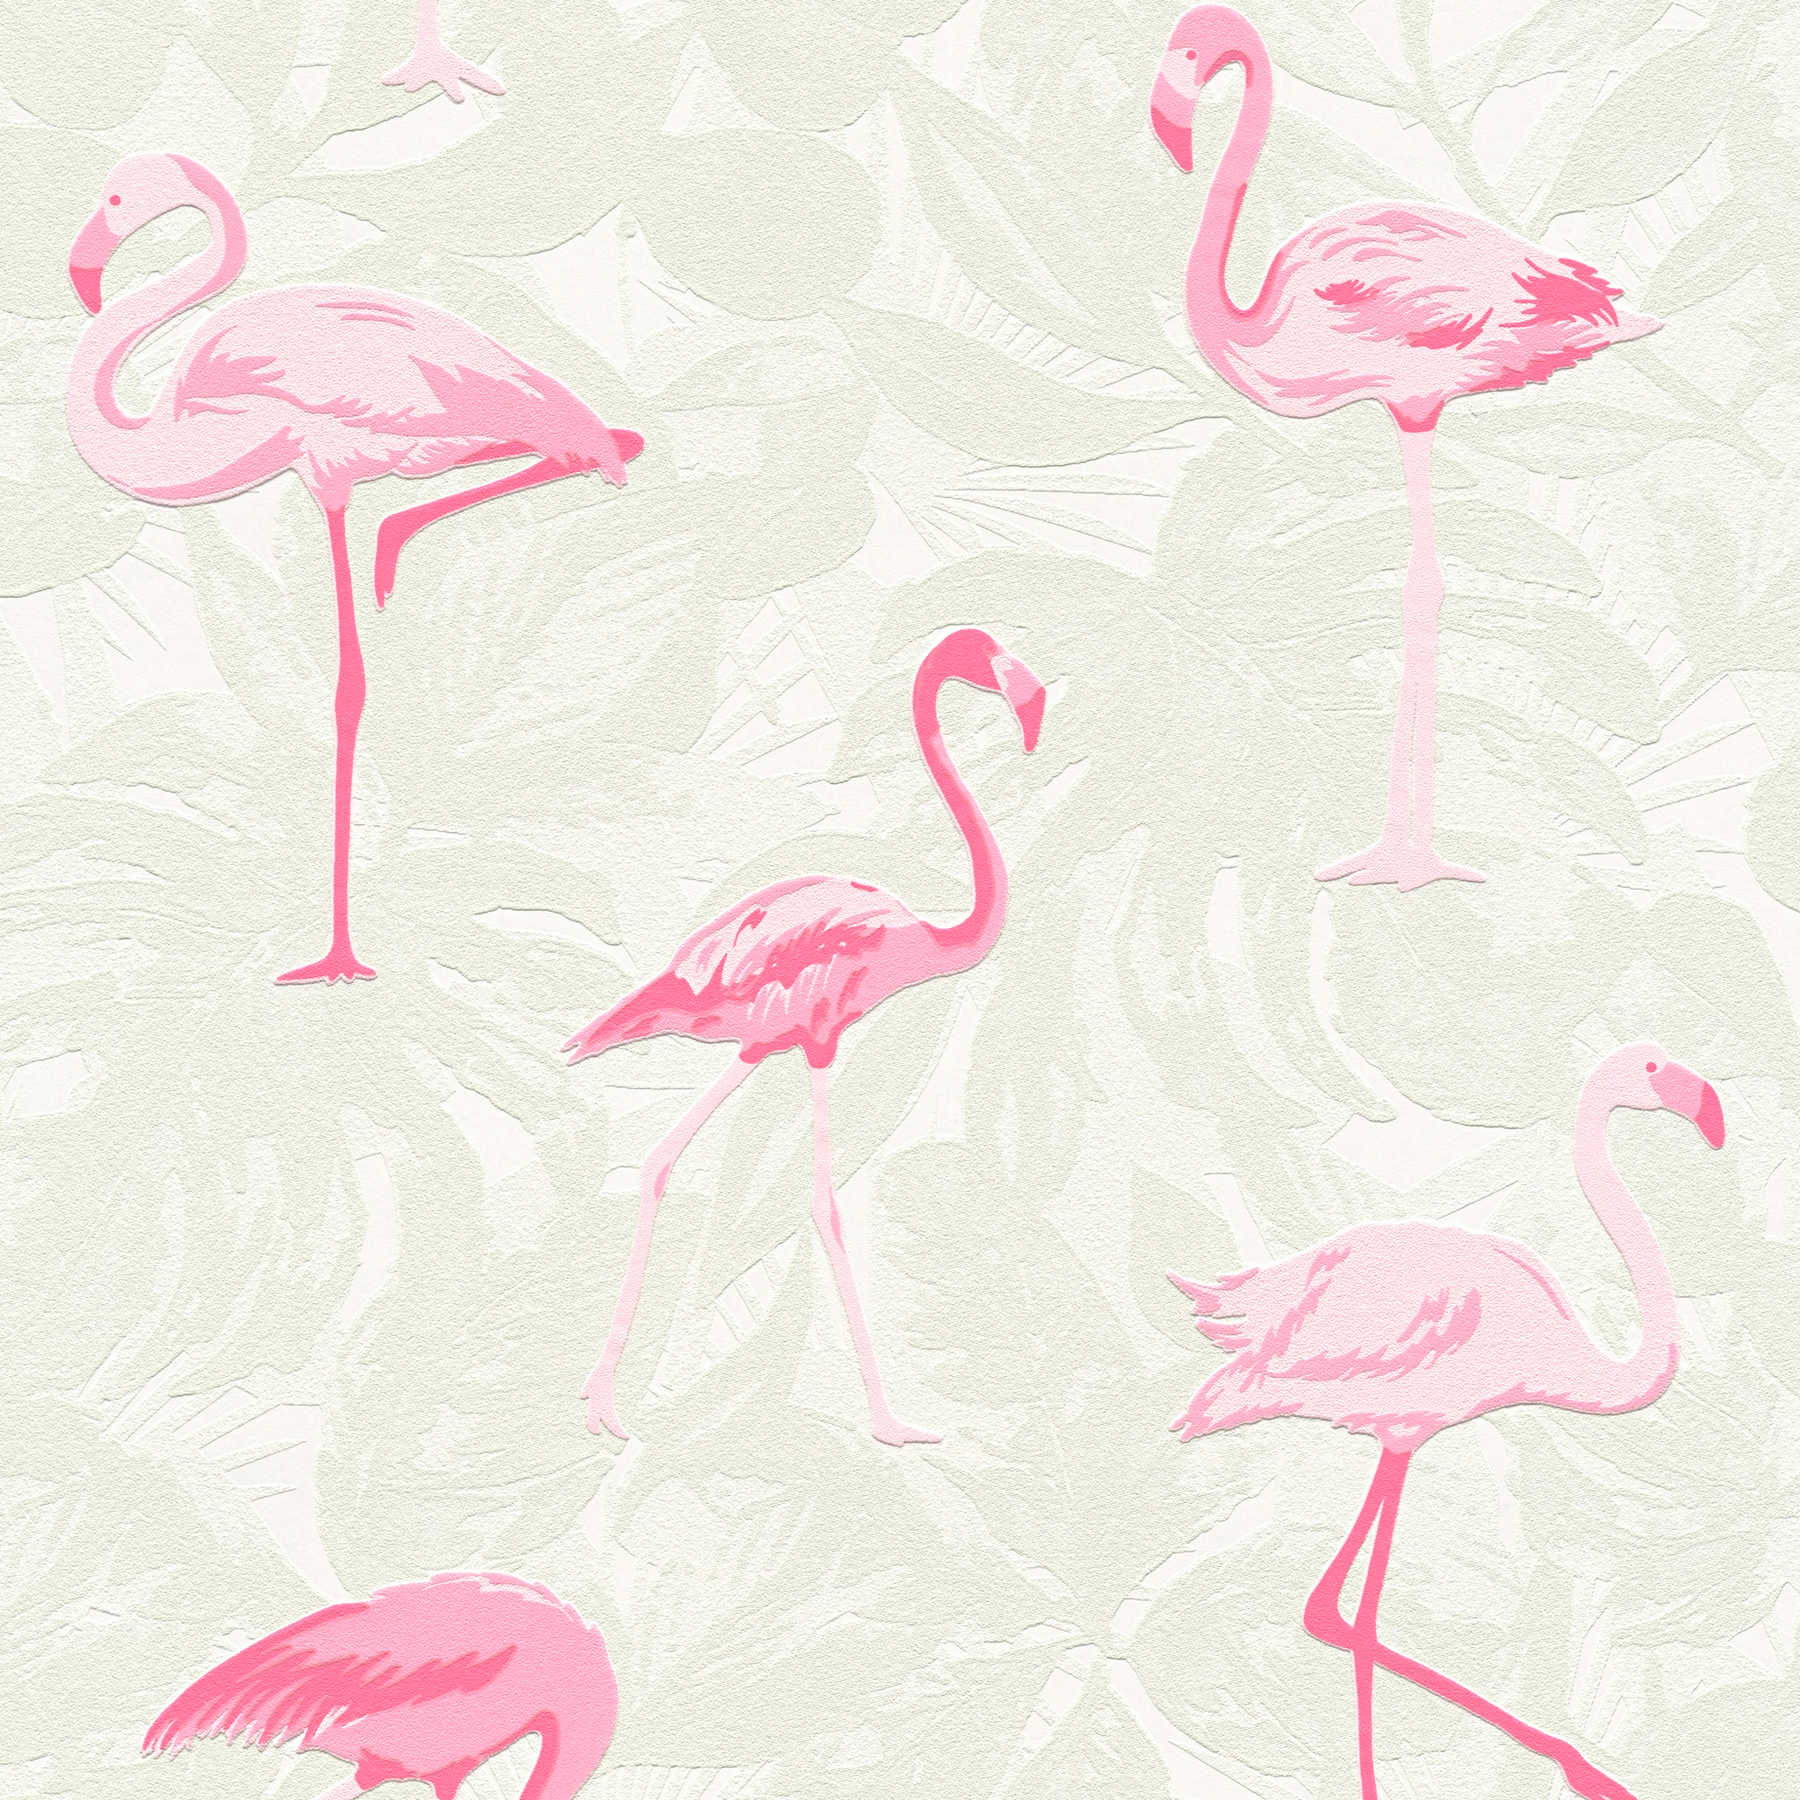             Flamingo behang met structuur design & bladeren patroon - crème, roze
        